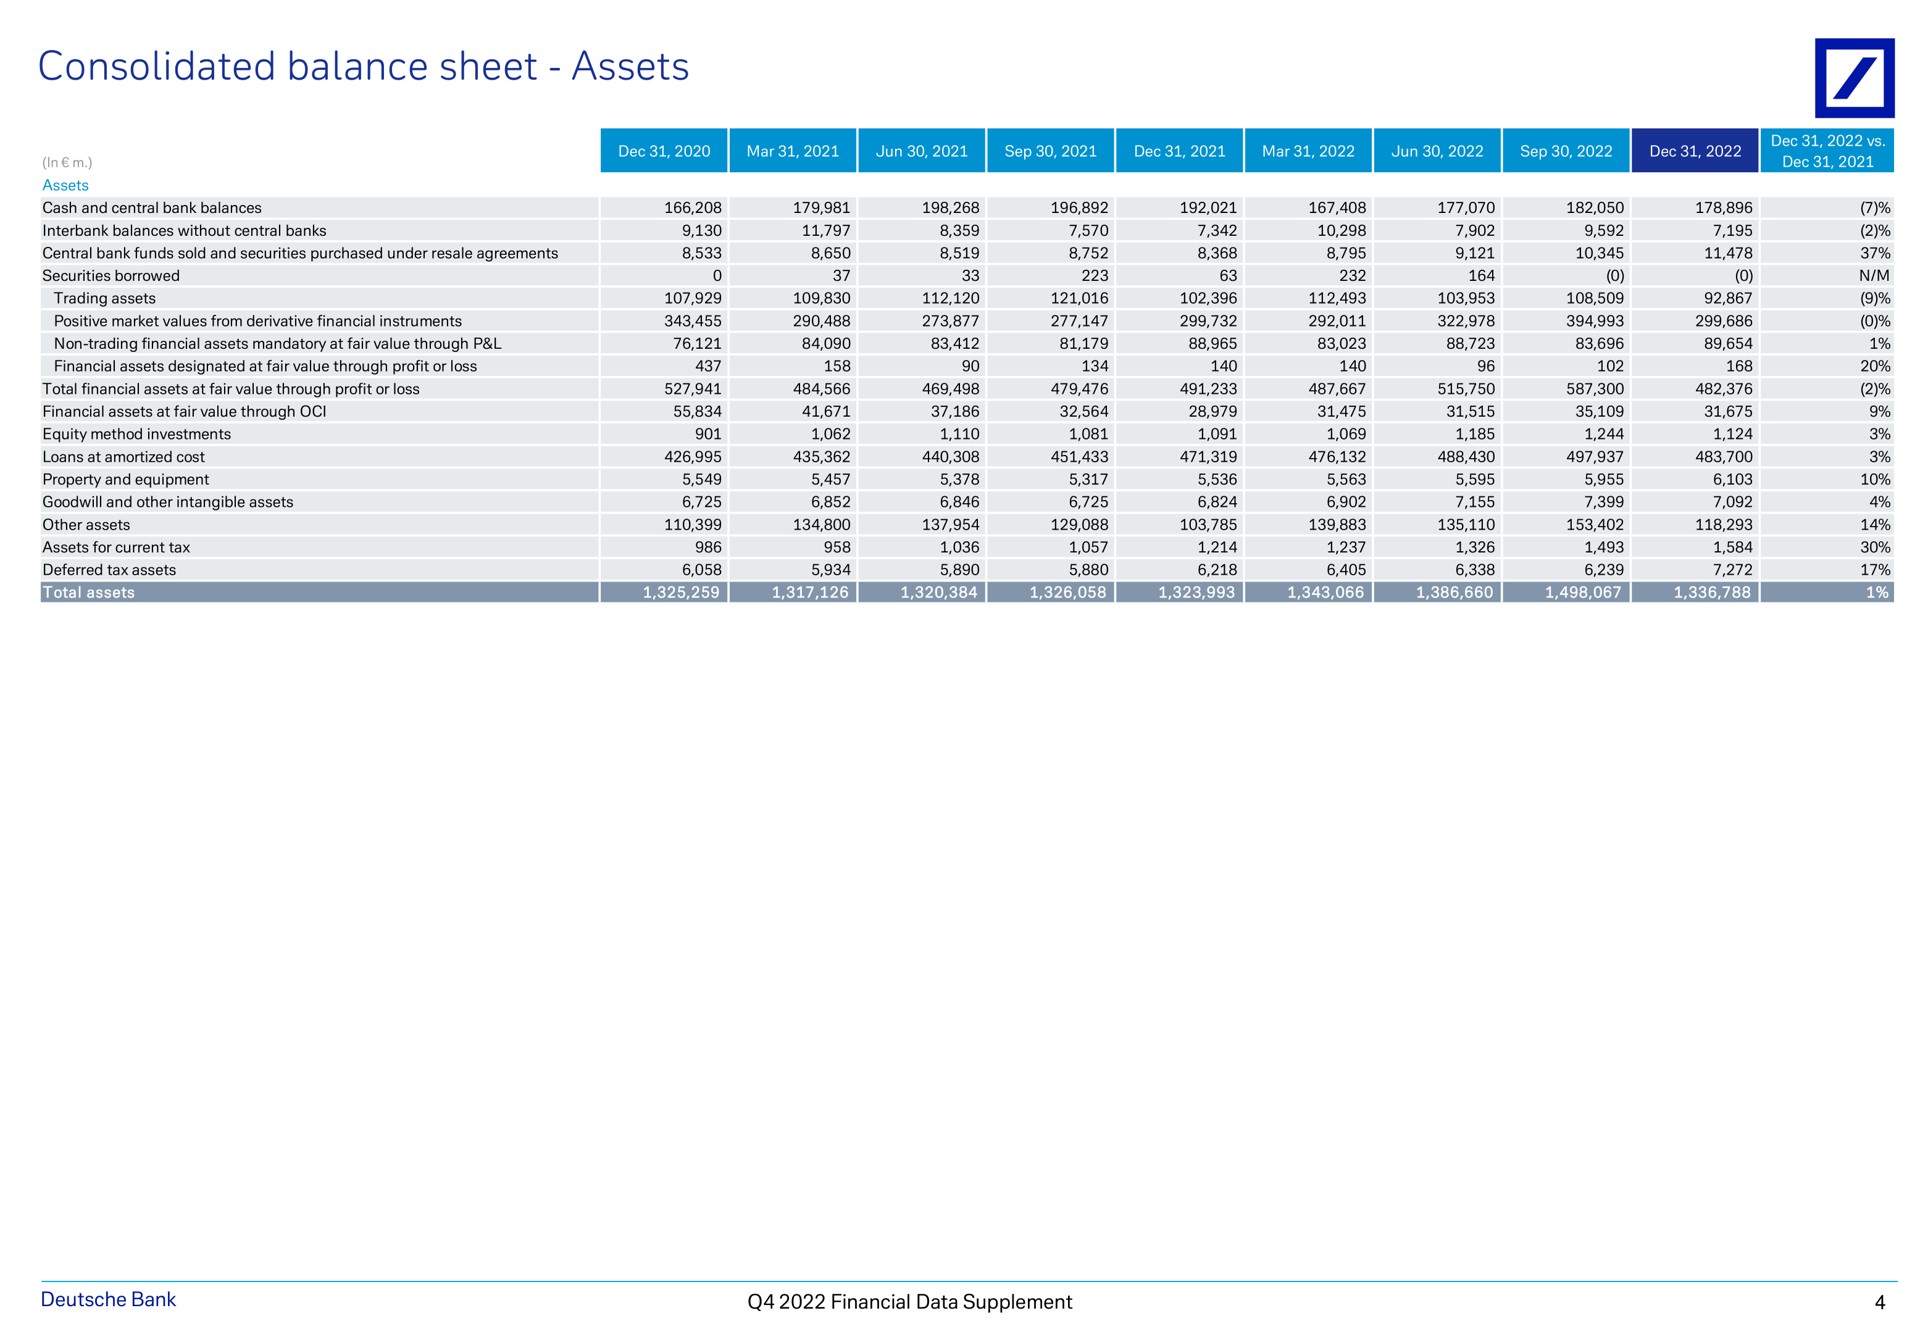 consolidated balance sheet assets mar mar bank financial data supplement | Deutsche Bank